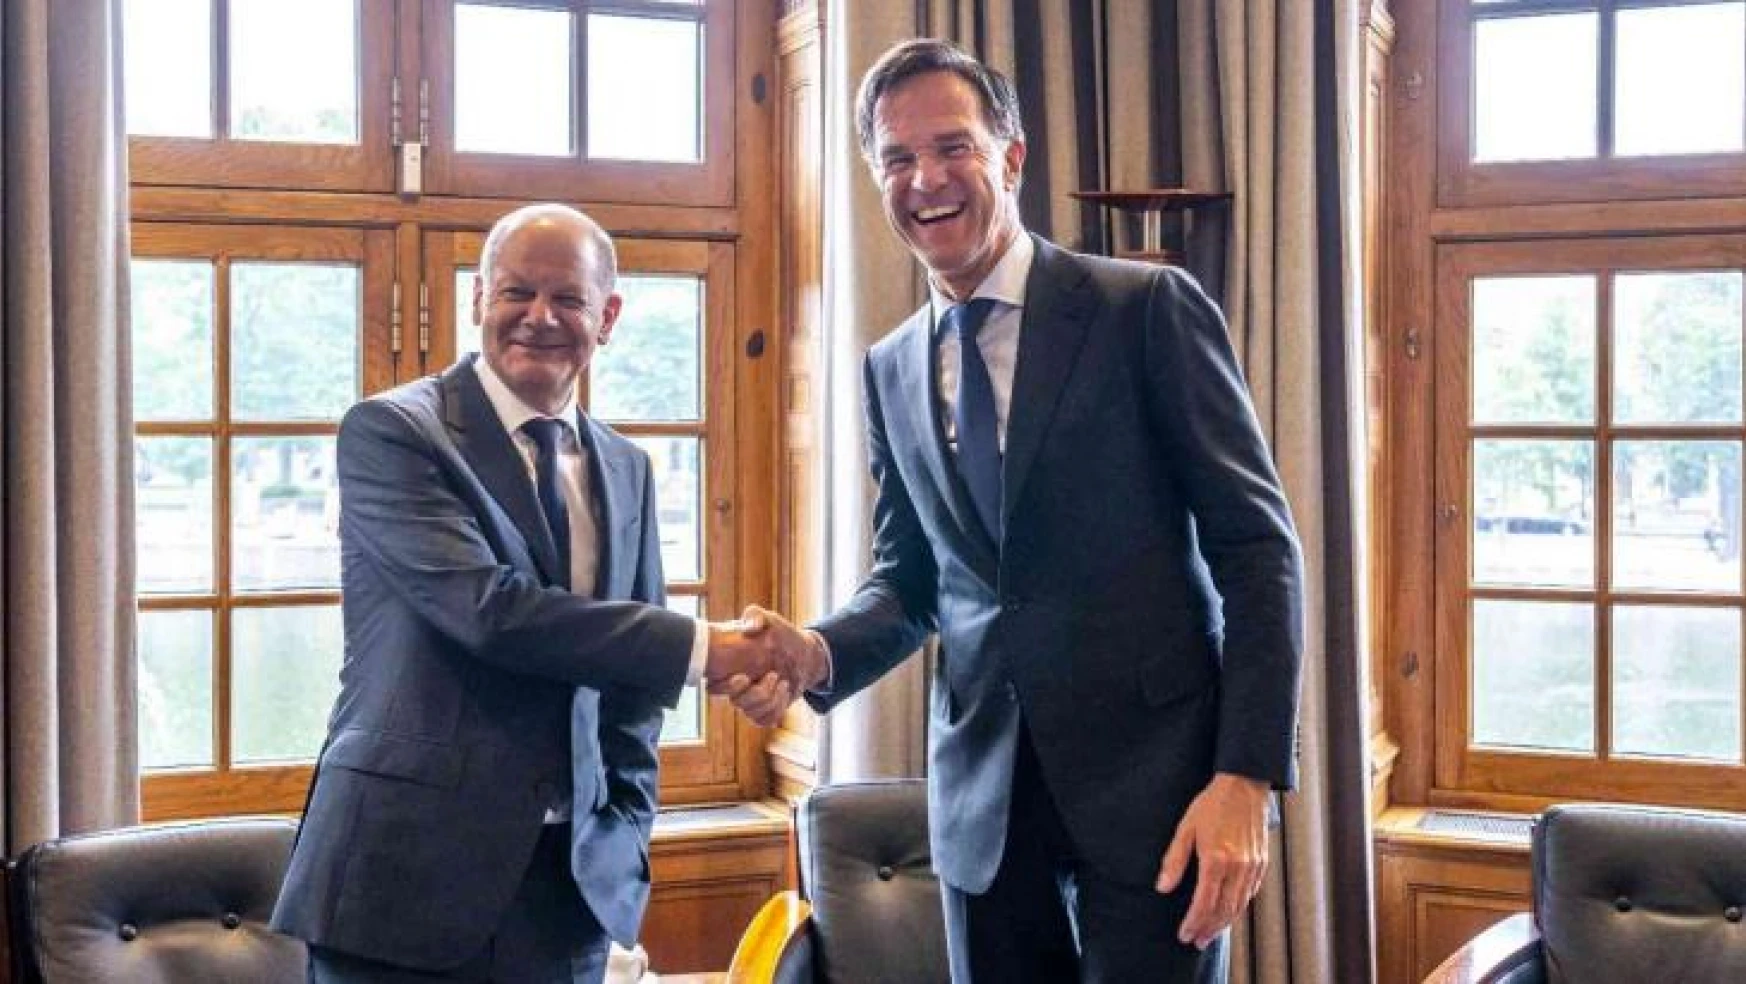 Hollanda Başbakanı Rutte: 'Türkiye, İsveç ve Finlandiya arasındaki görüşmeler neticesinde olumlu bir yol bulunacağını umuyorum'